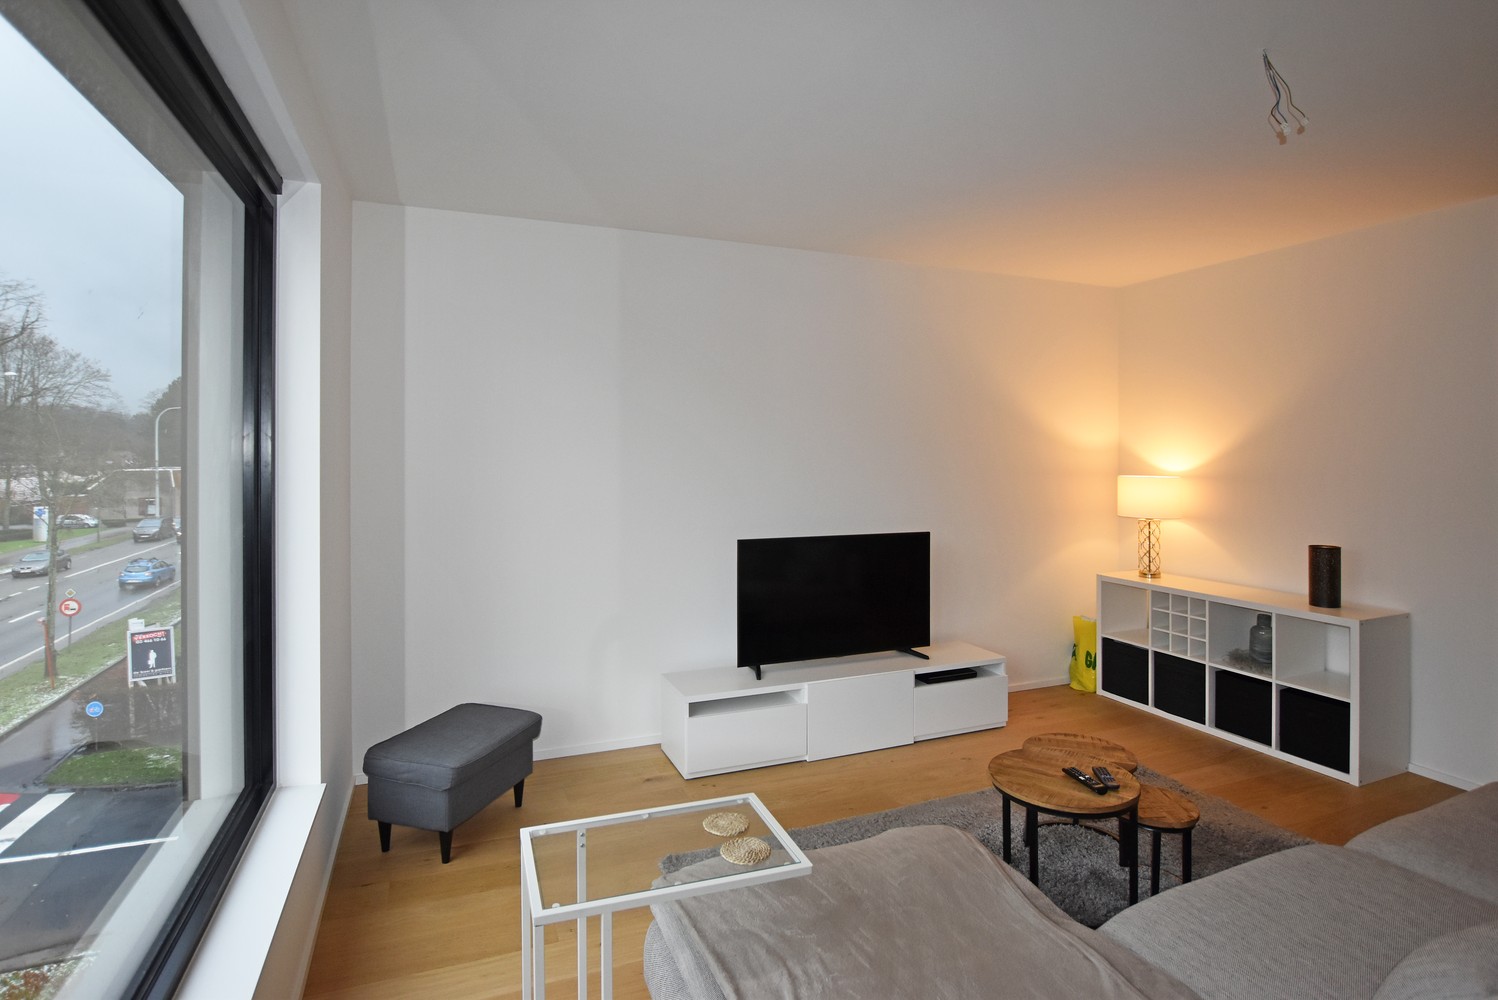 Stijlvol afgewerkt appartement met 2 slaapkamers, terras & autostaanplaats/garagebox in Wijnegem! afbeelding 2